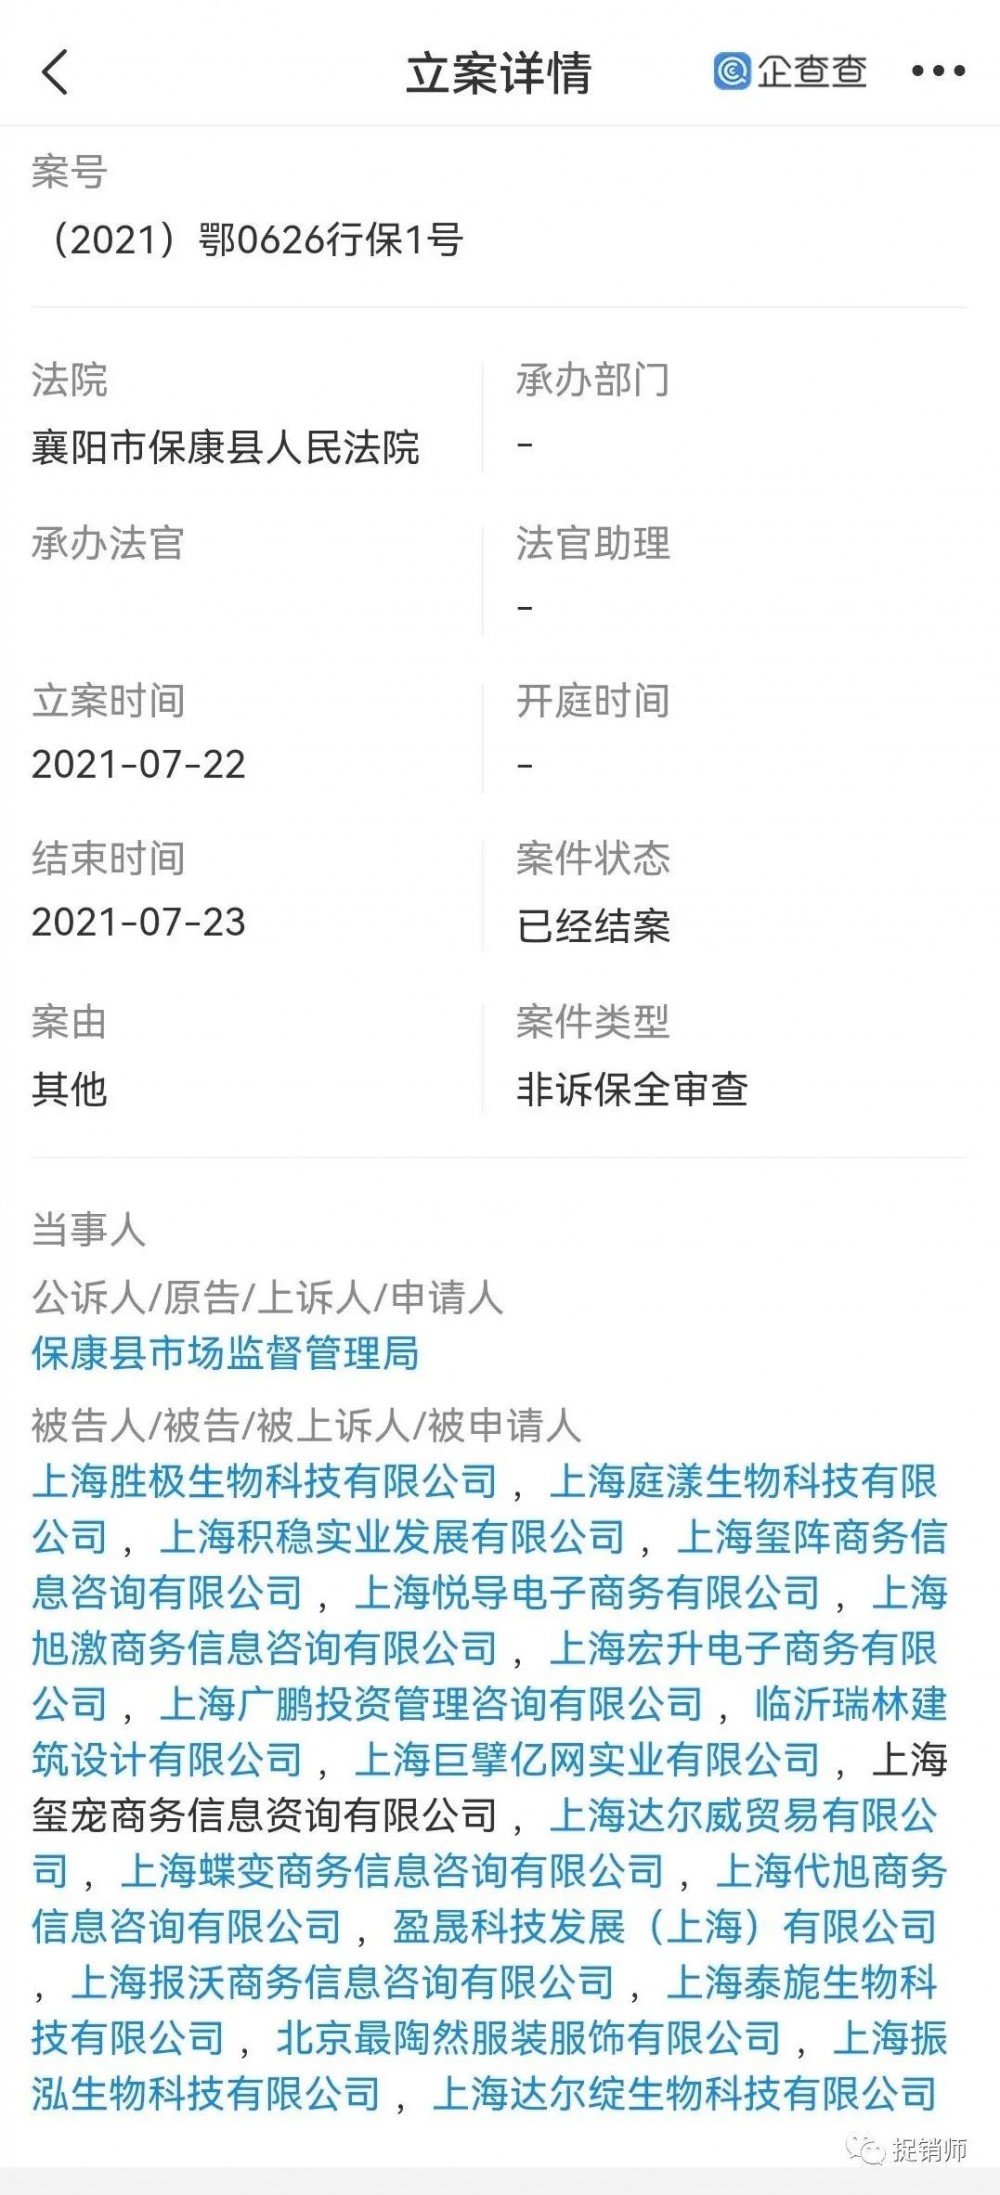 此前曾遭保全审查的上海达尔威因涉嫌网络传销遭冻账6亿元插图2